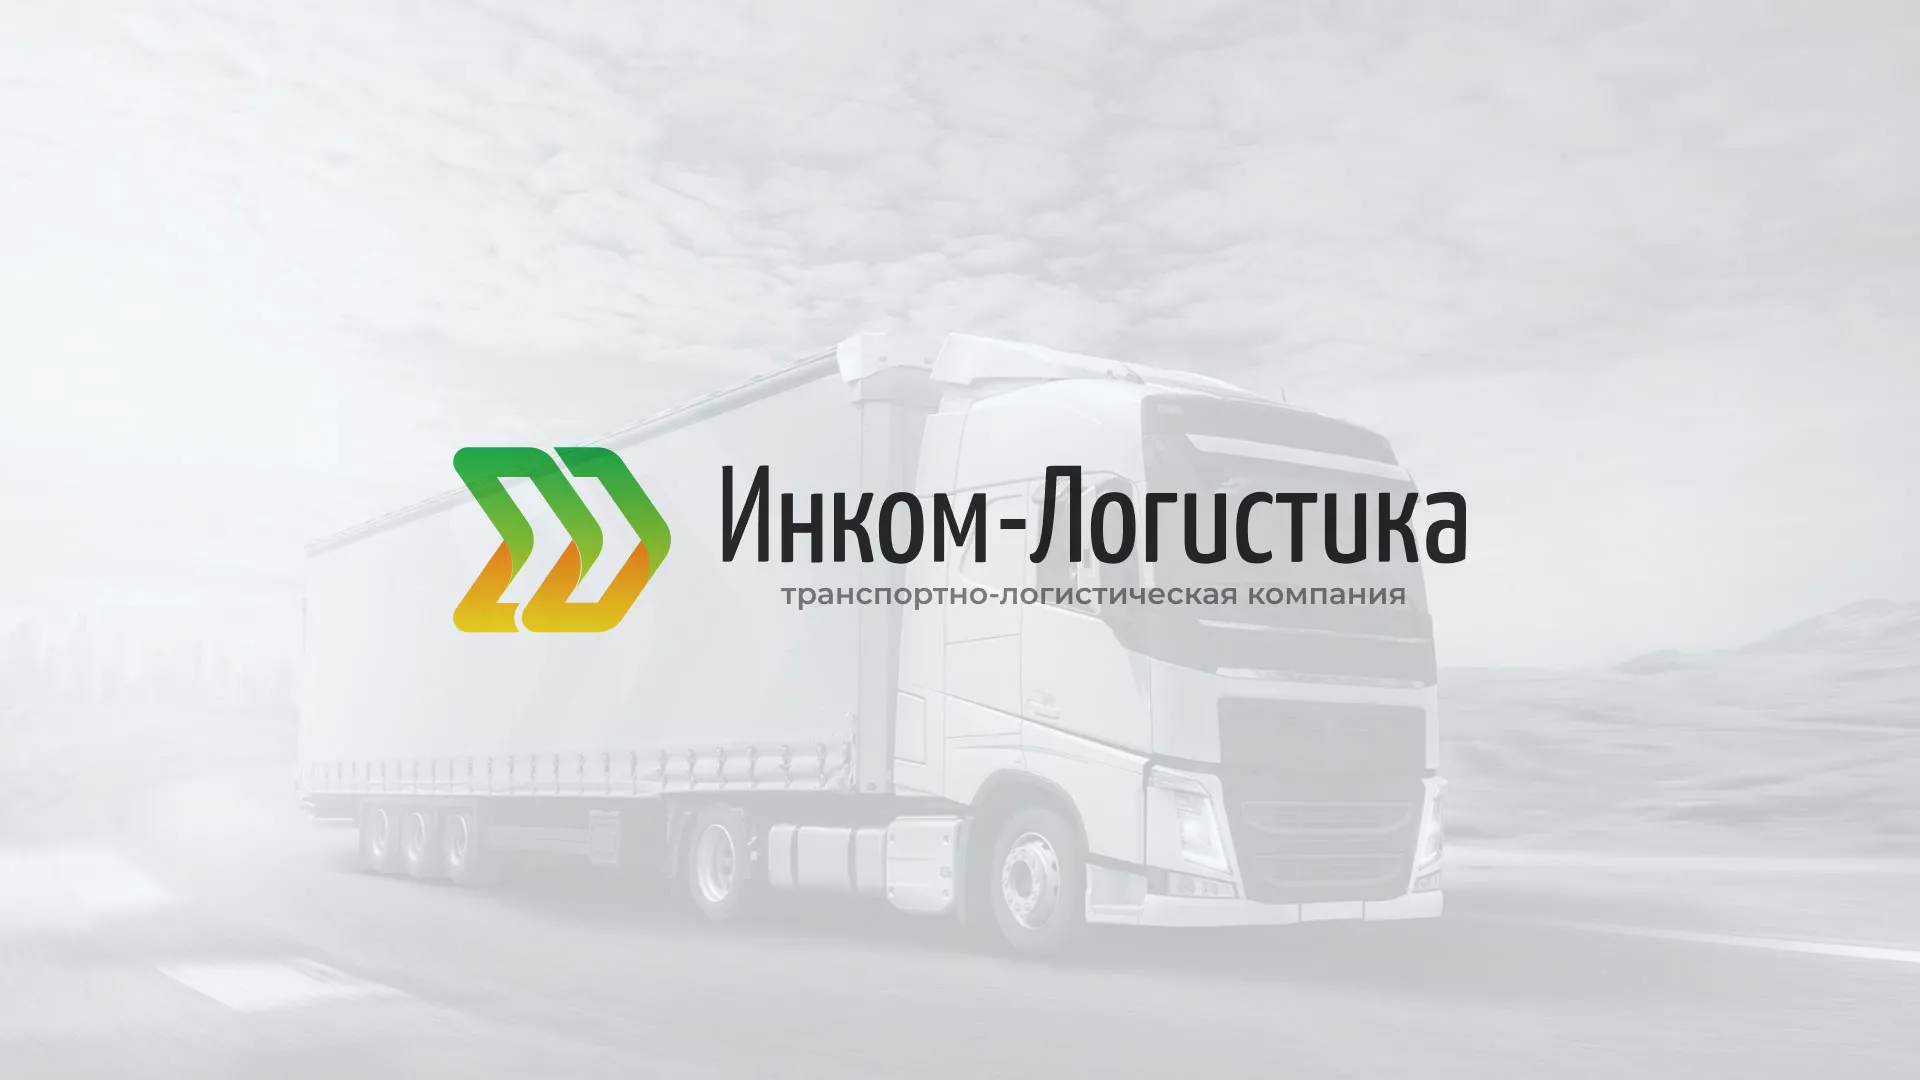 Разработка логотипа и сайта компании «Инком-Логистика» в Пошехонье